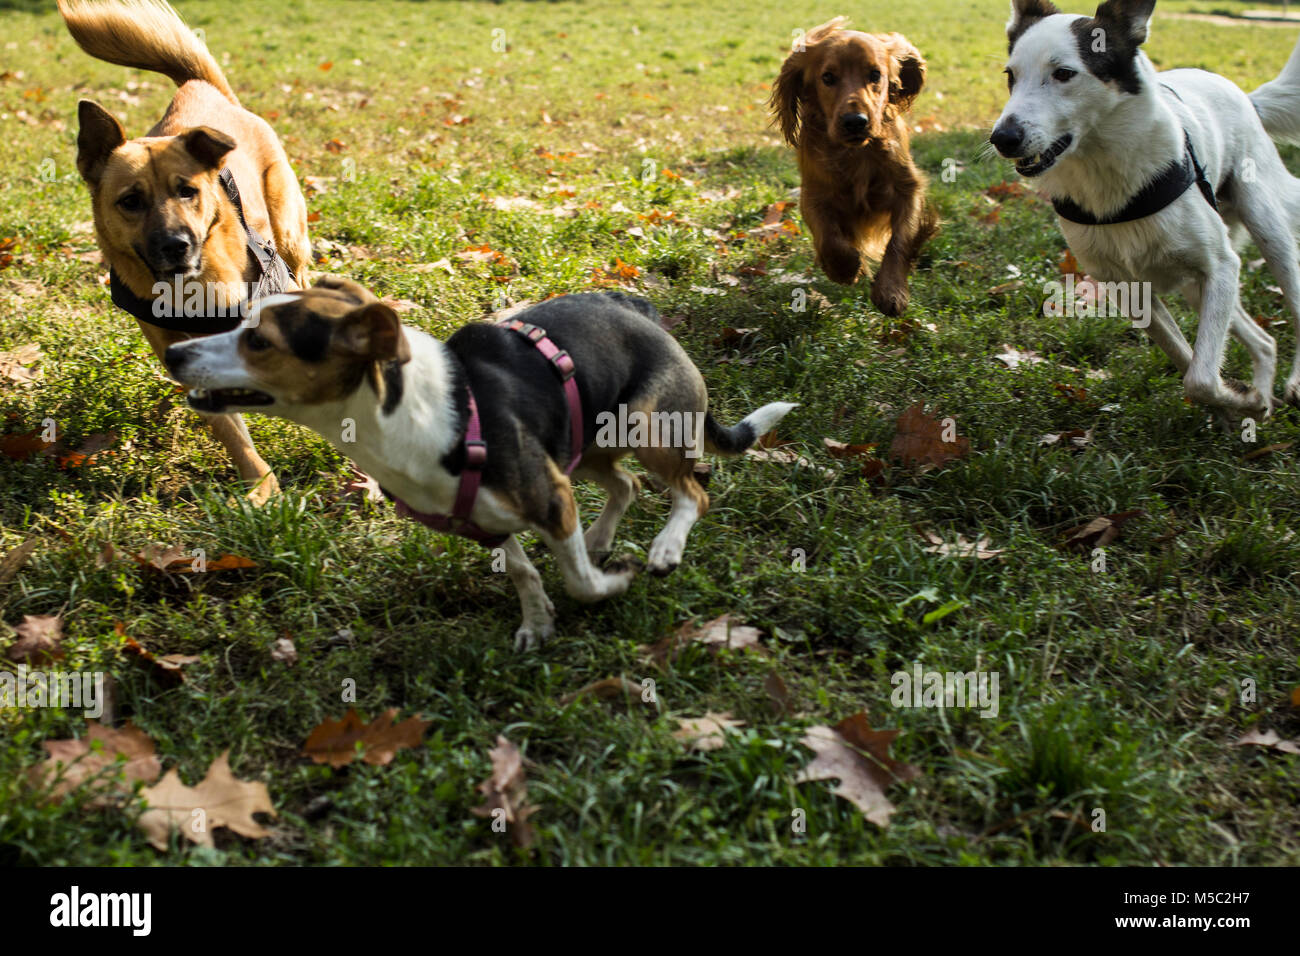 Les chiens se courrant ensemble dans le parc, se chassant les uns les autres pour s'amuser Banque D'Images